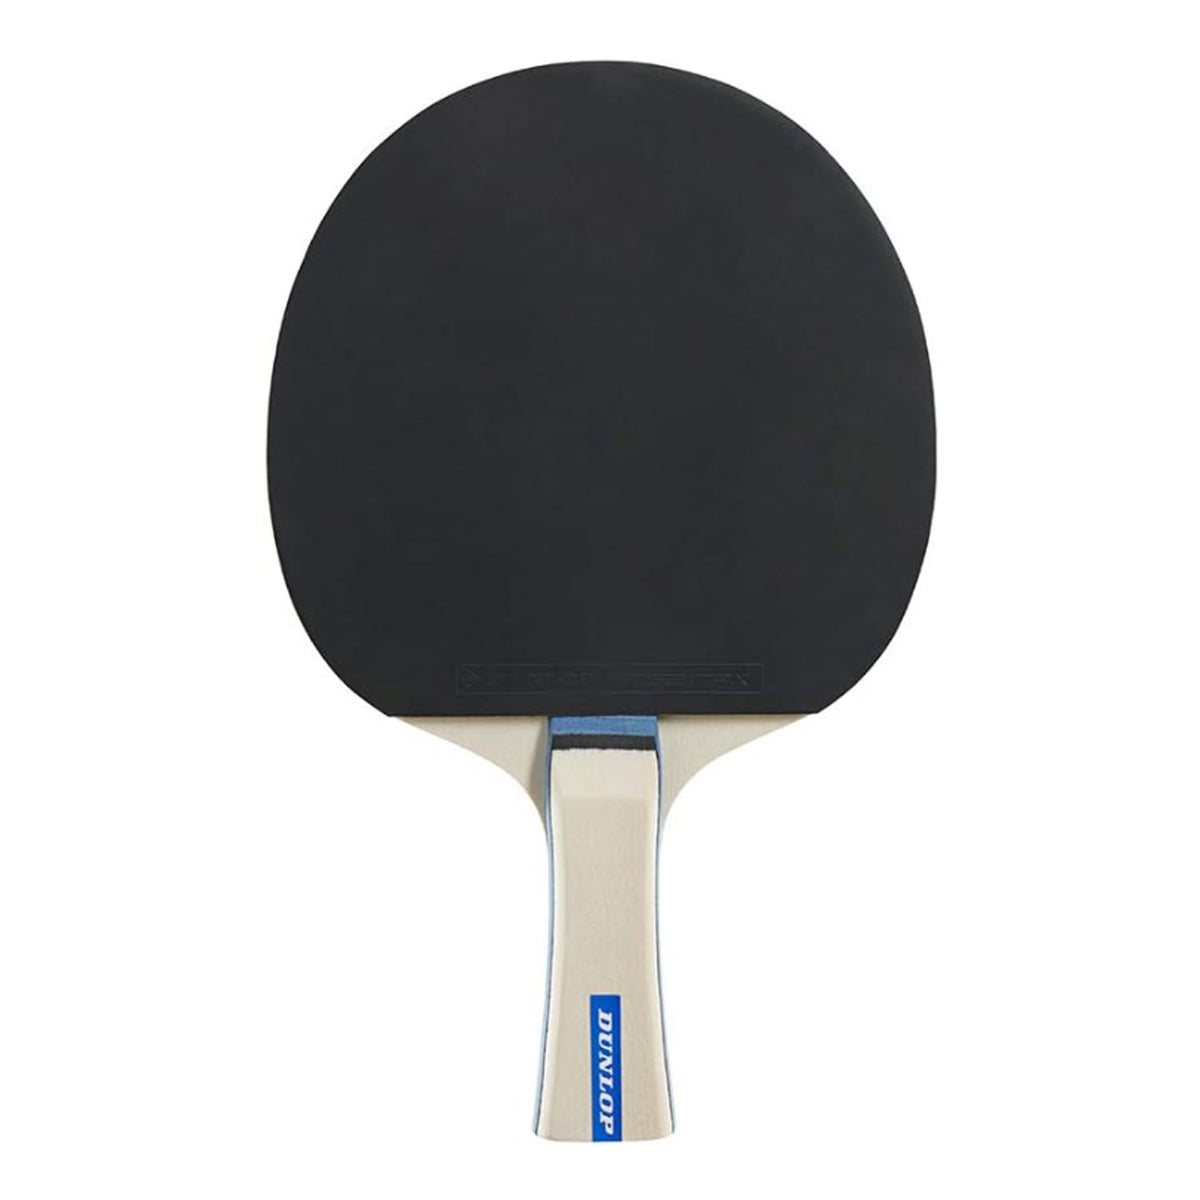 Dunlop Rage Table Tennis Bat